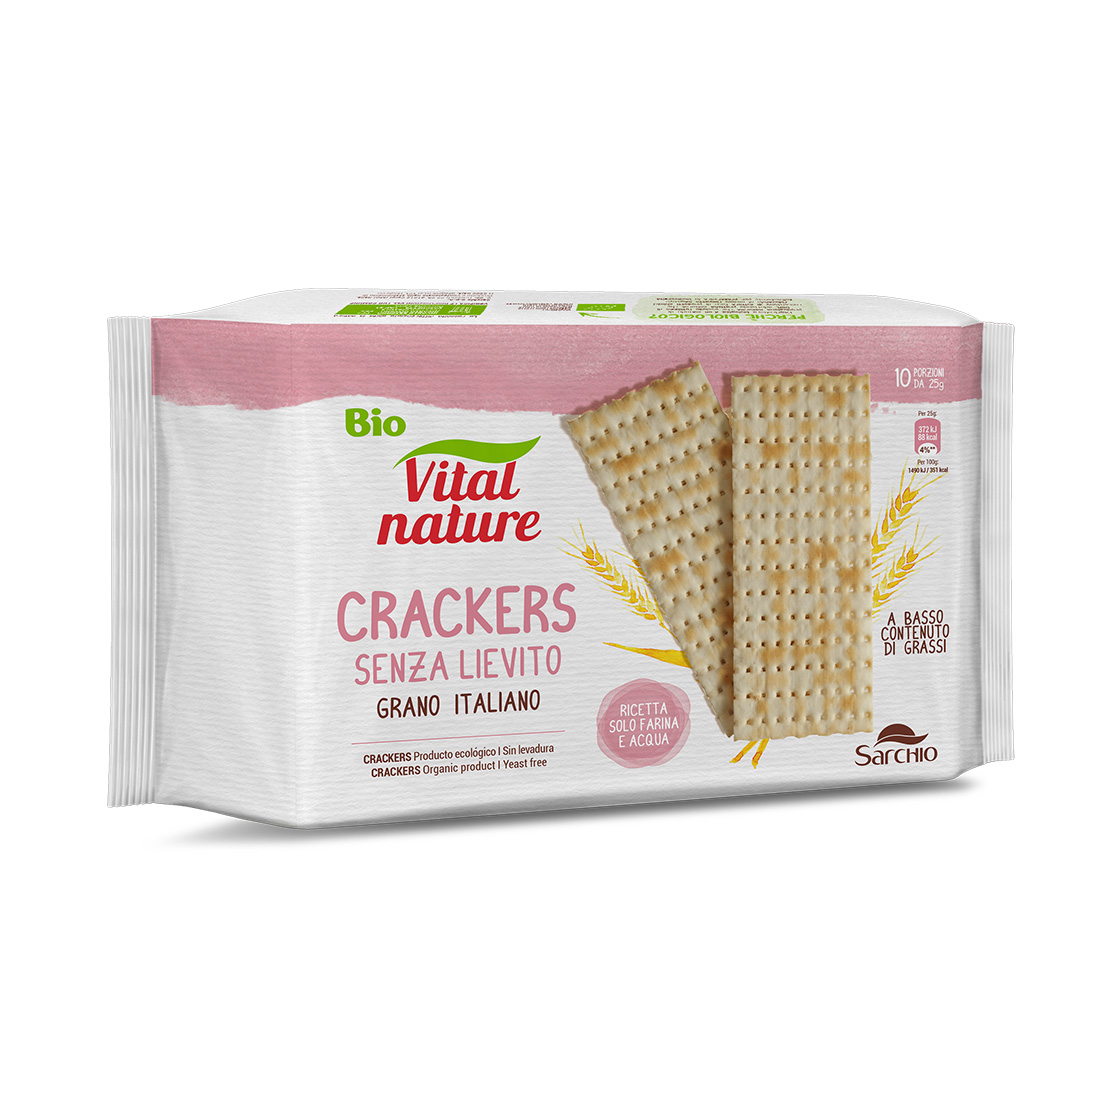 Yeast free crackers - Wheat